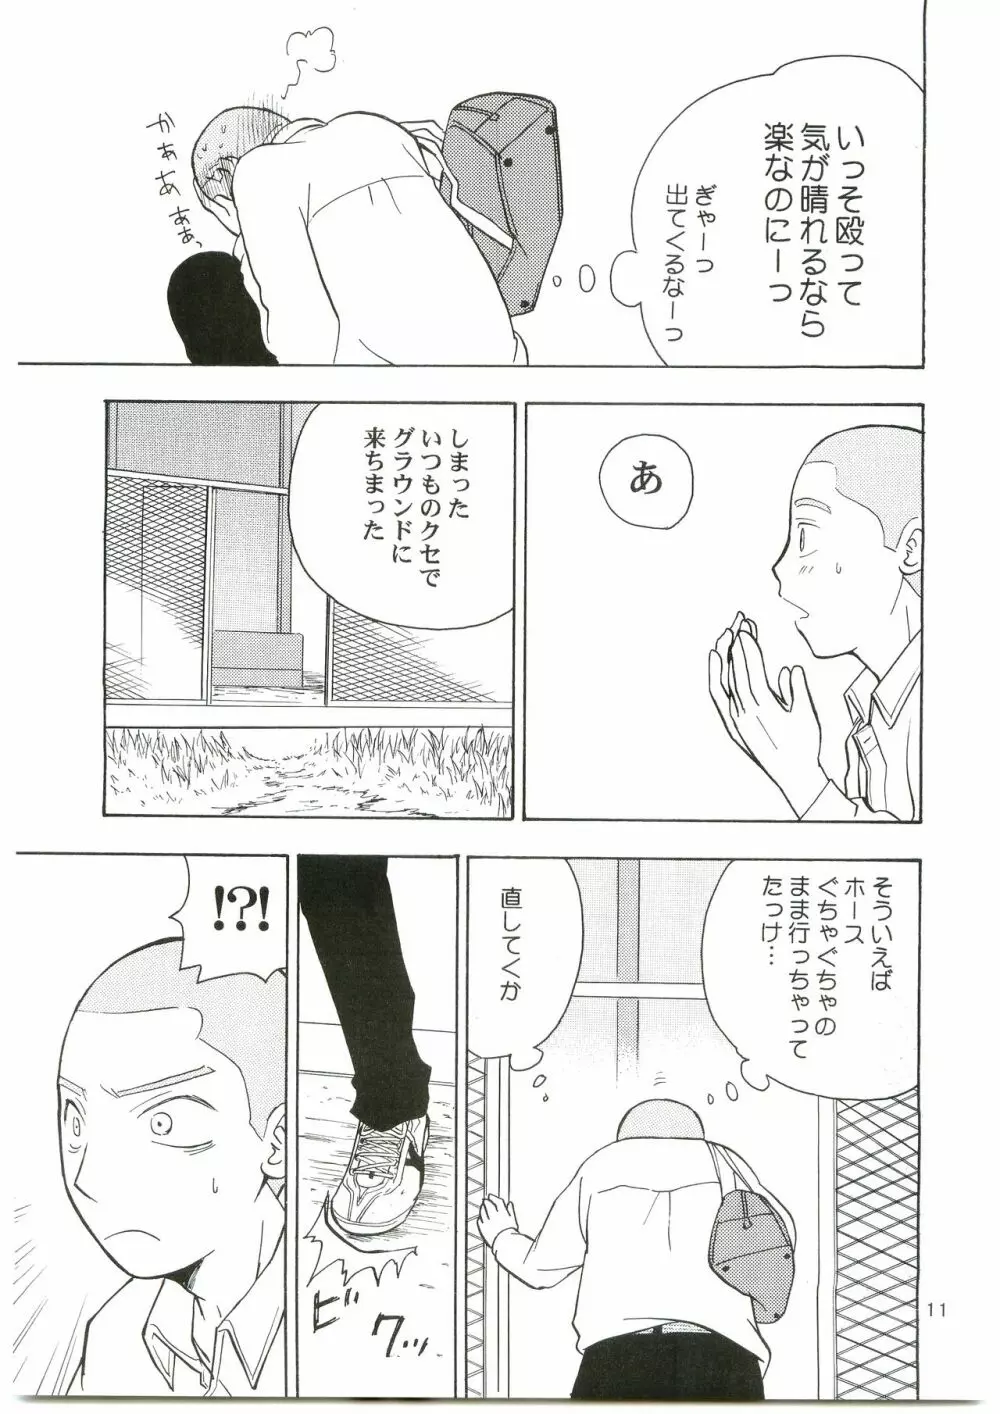 田島注意報に。 - page10